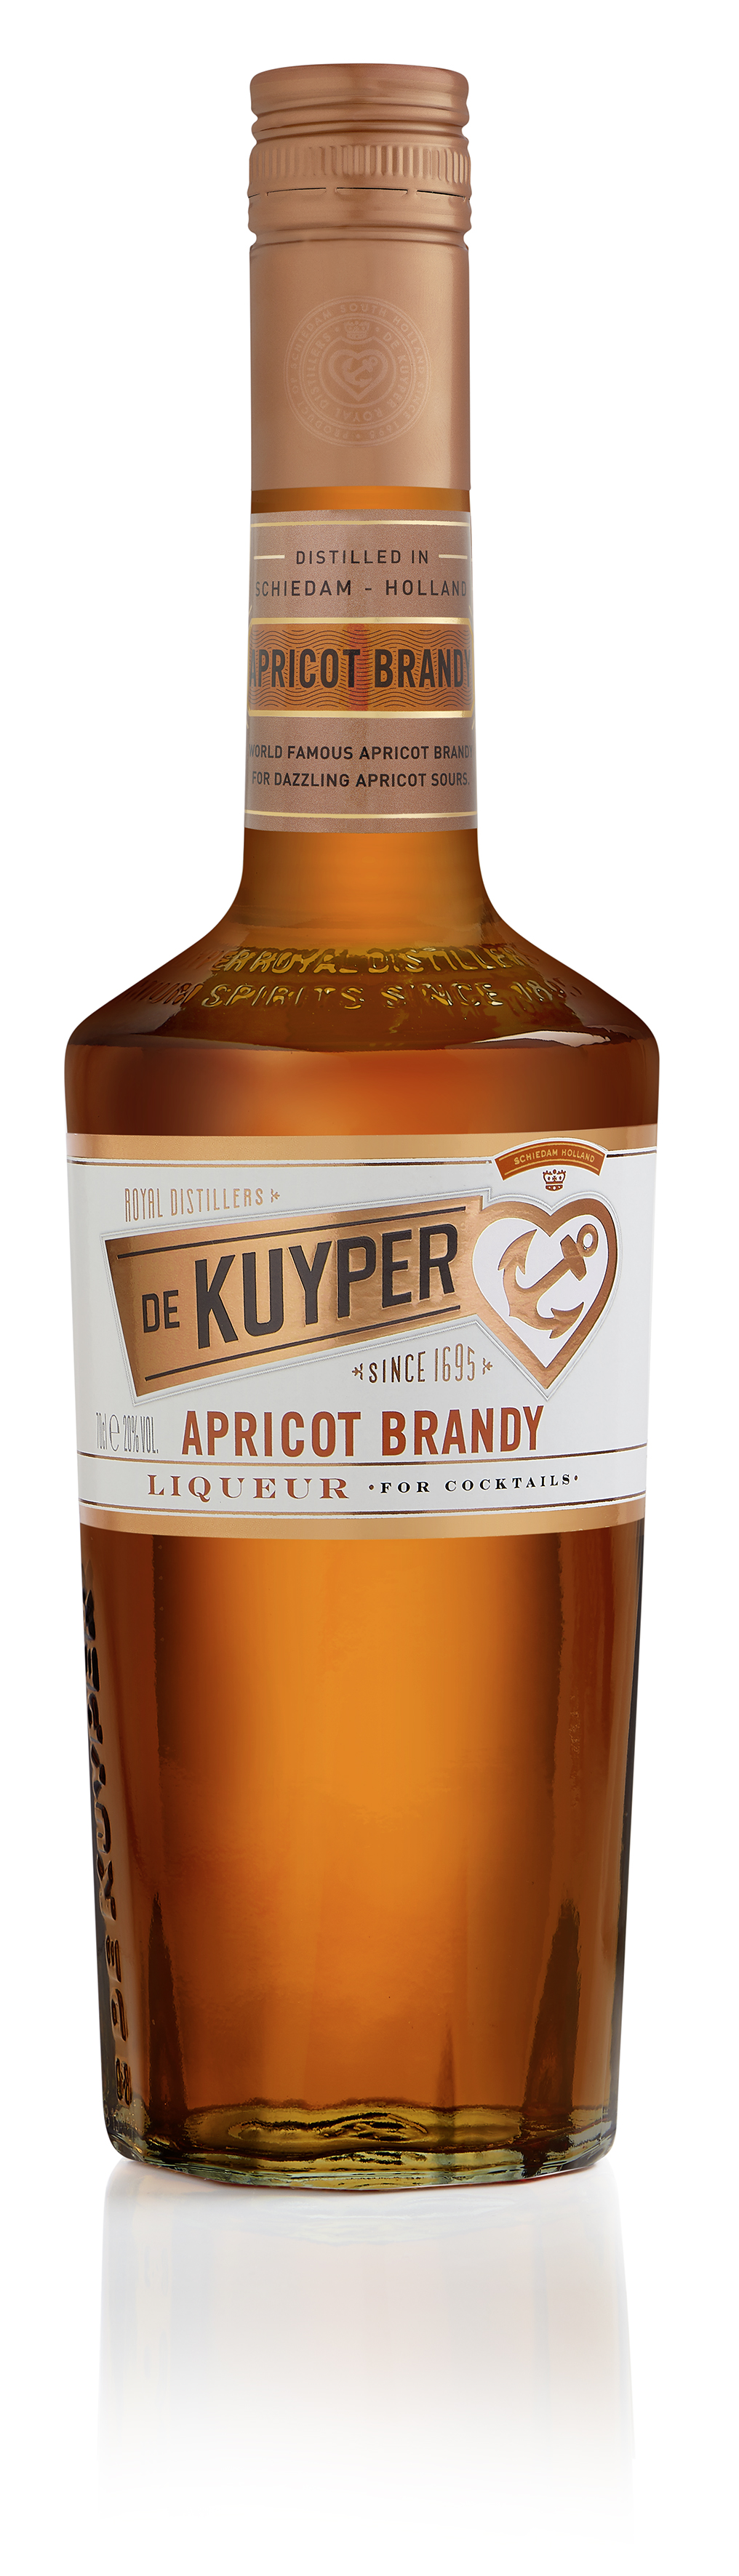 De Kuyper Apricot Brandy Likör 20%vol. 0,7l